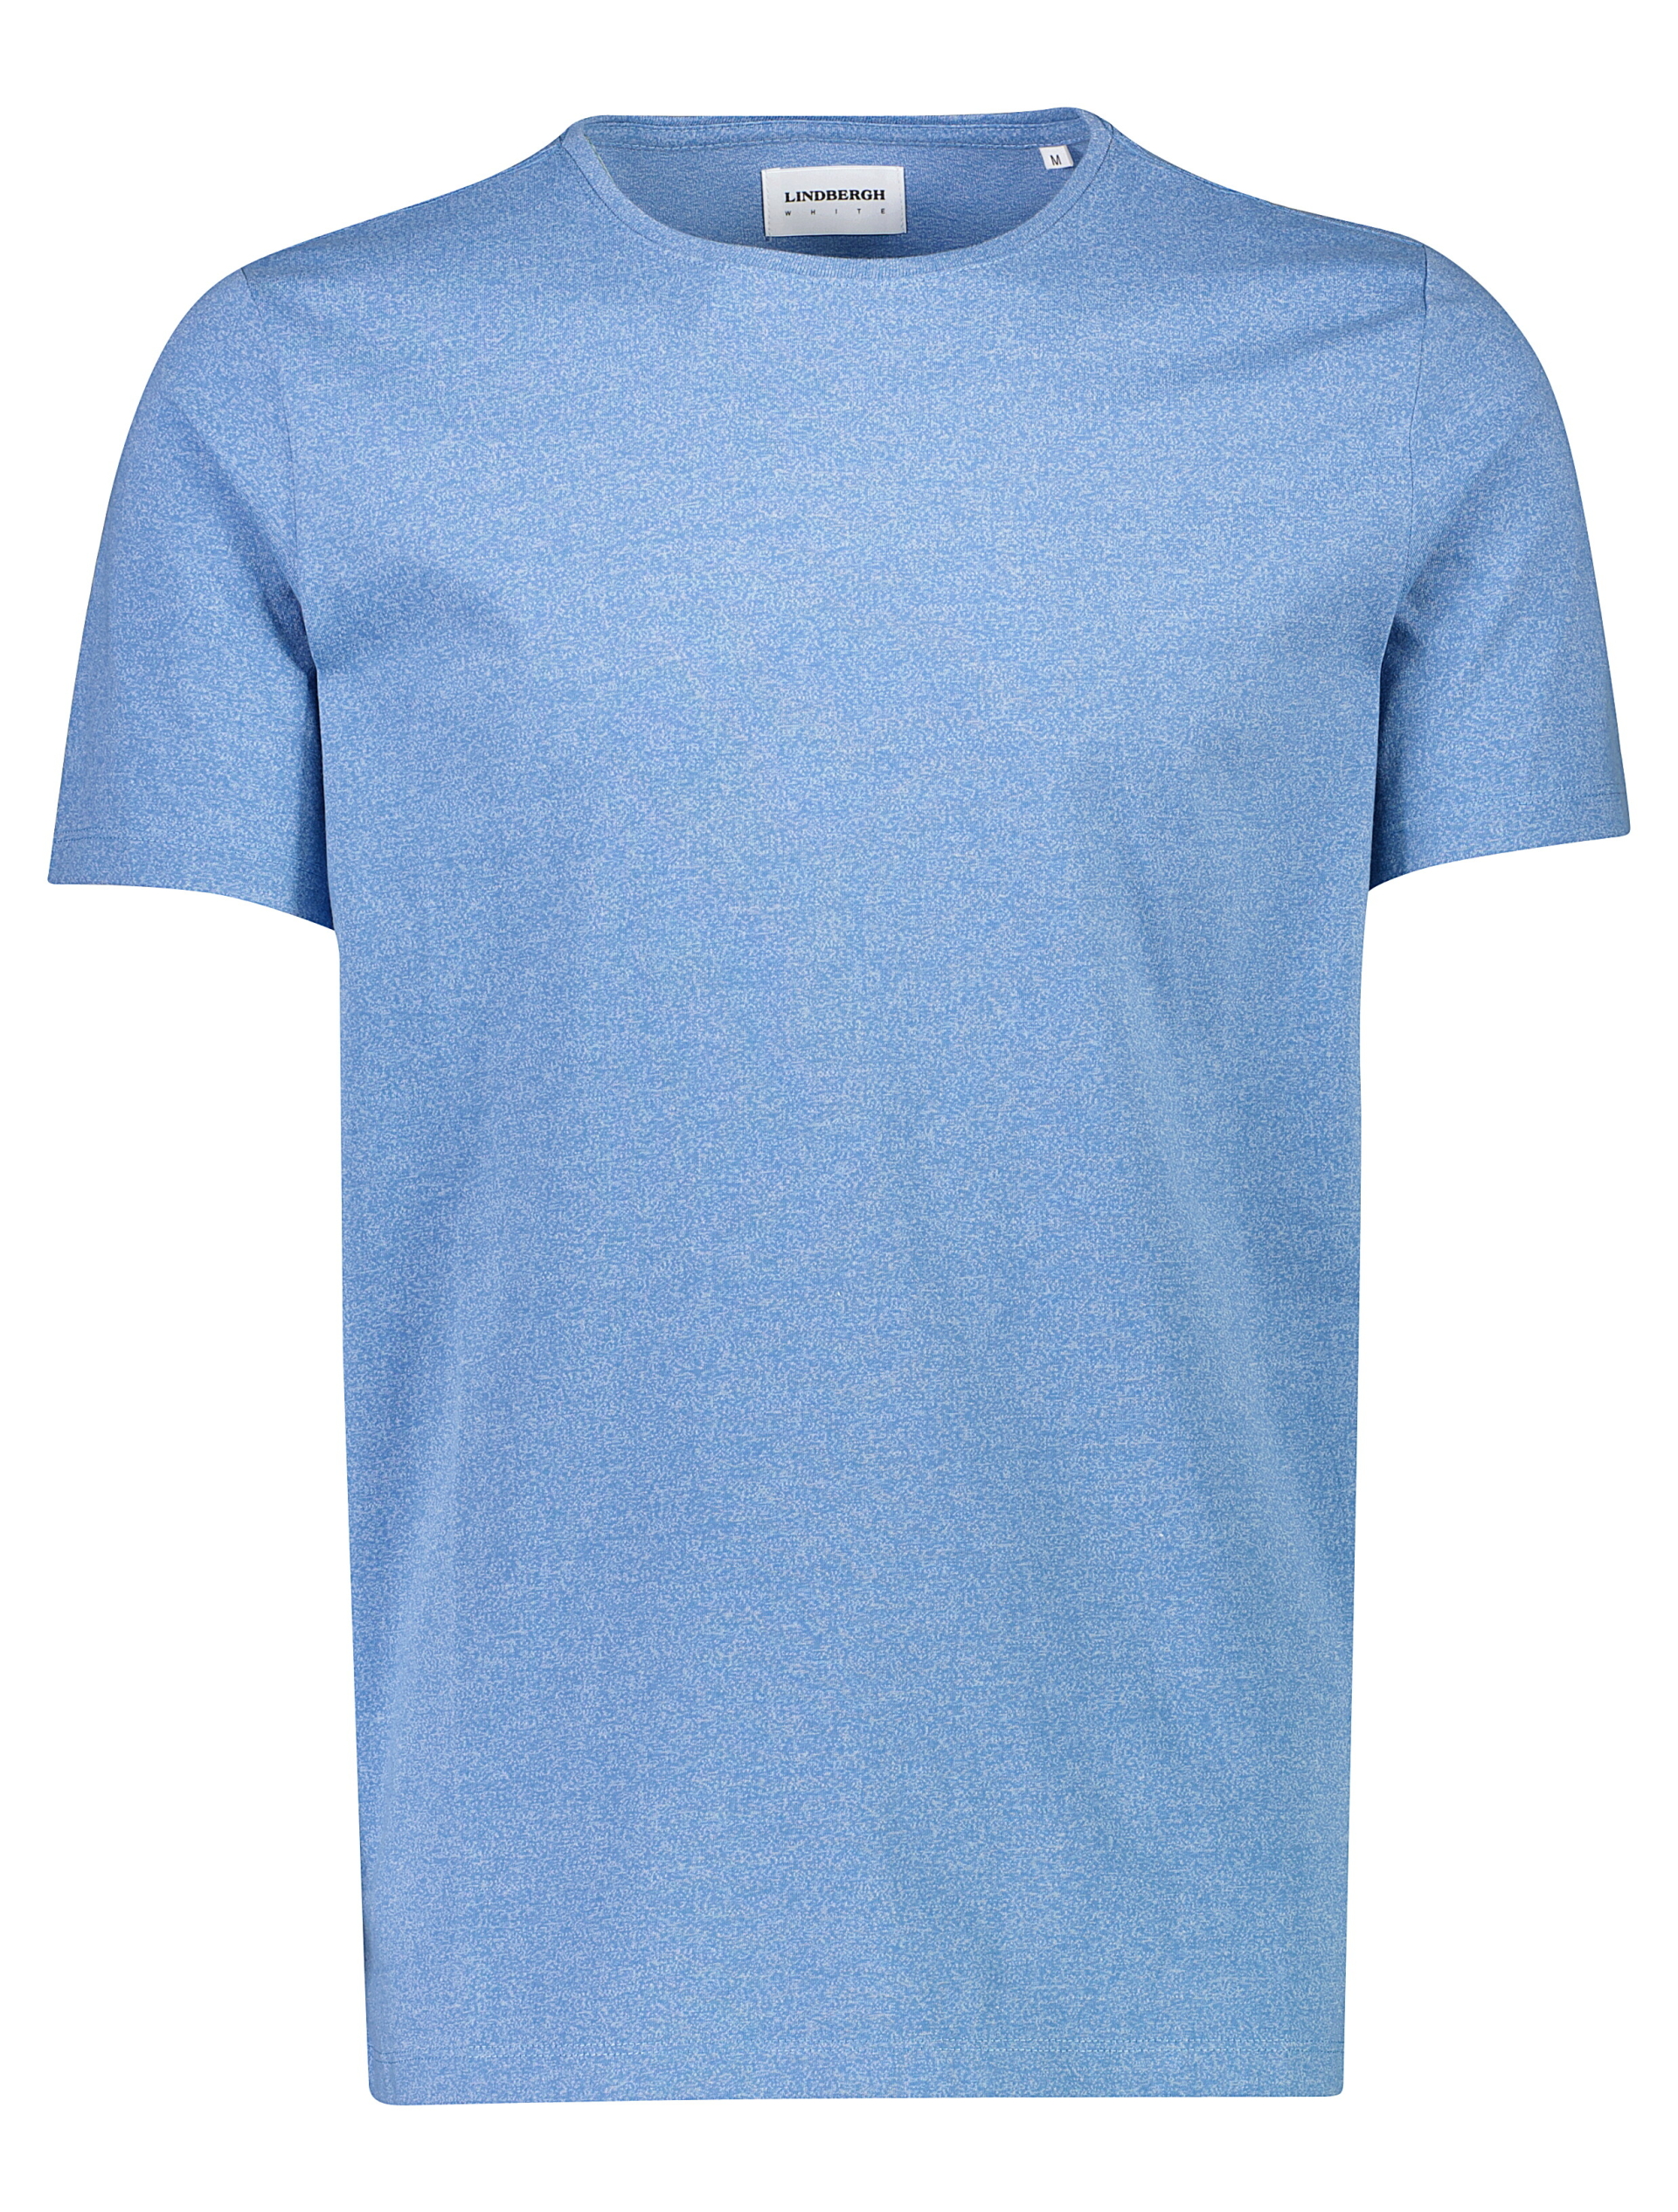 Lindbergh T-shirt blau / lt blue mix 123